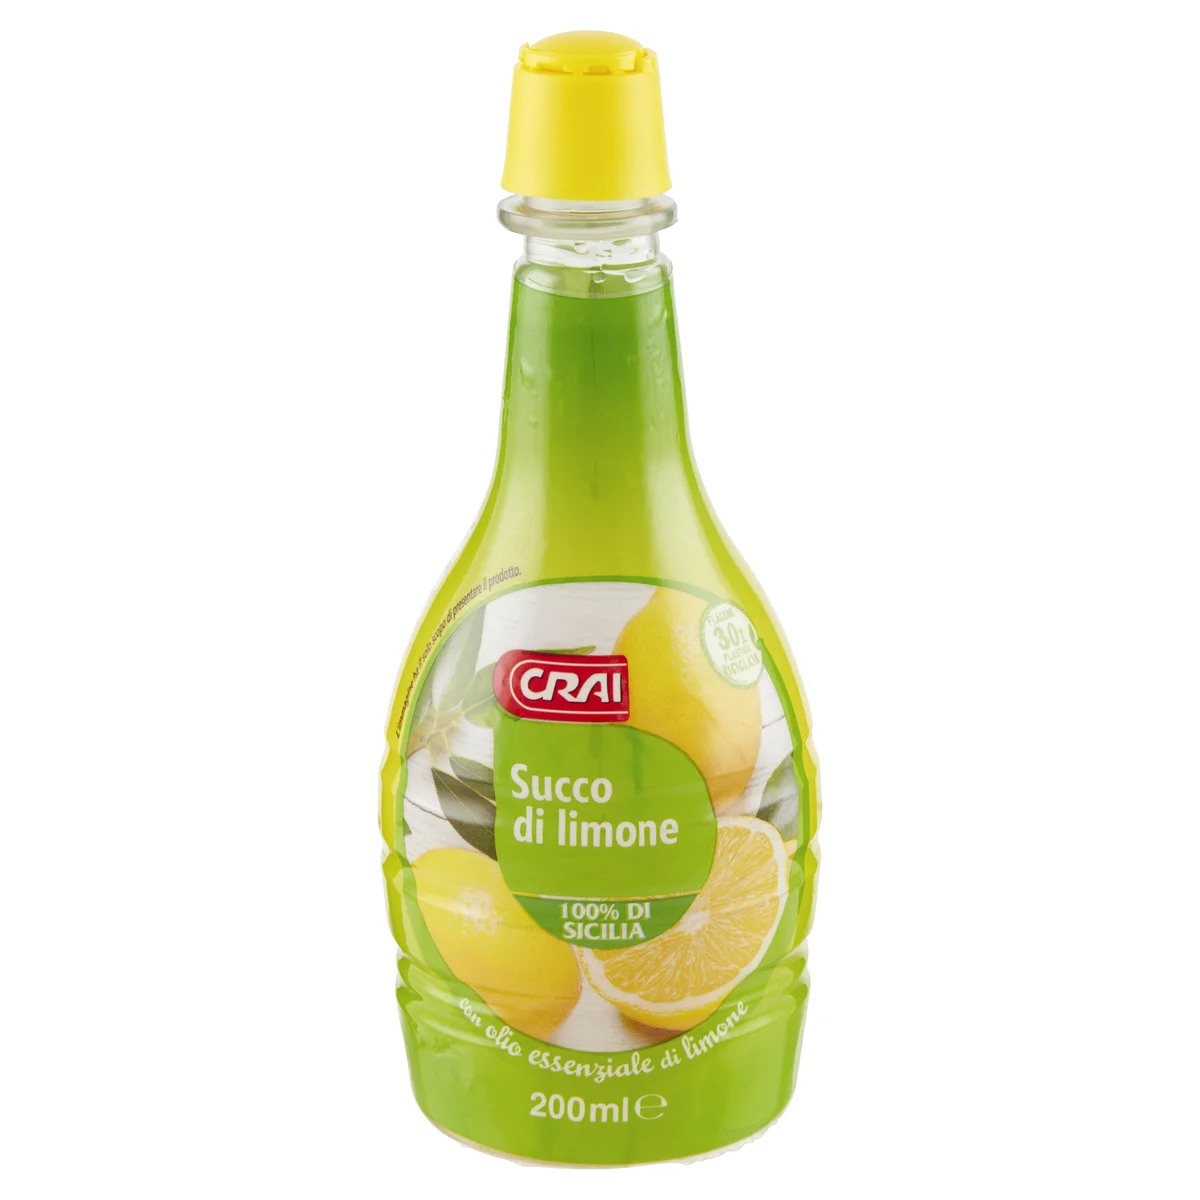 Crai Succo di limone 200 ml